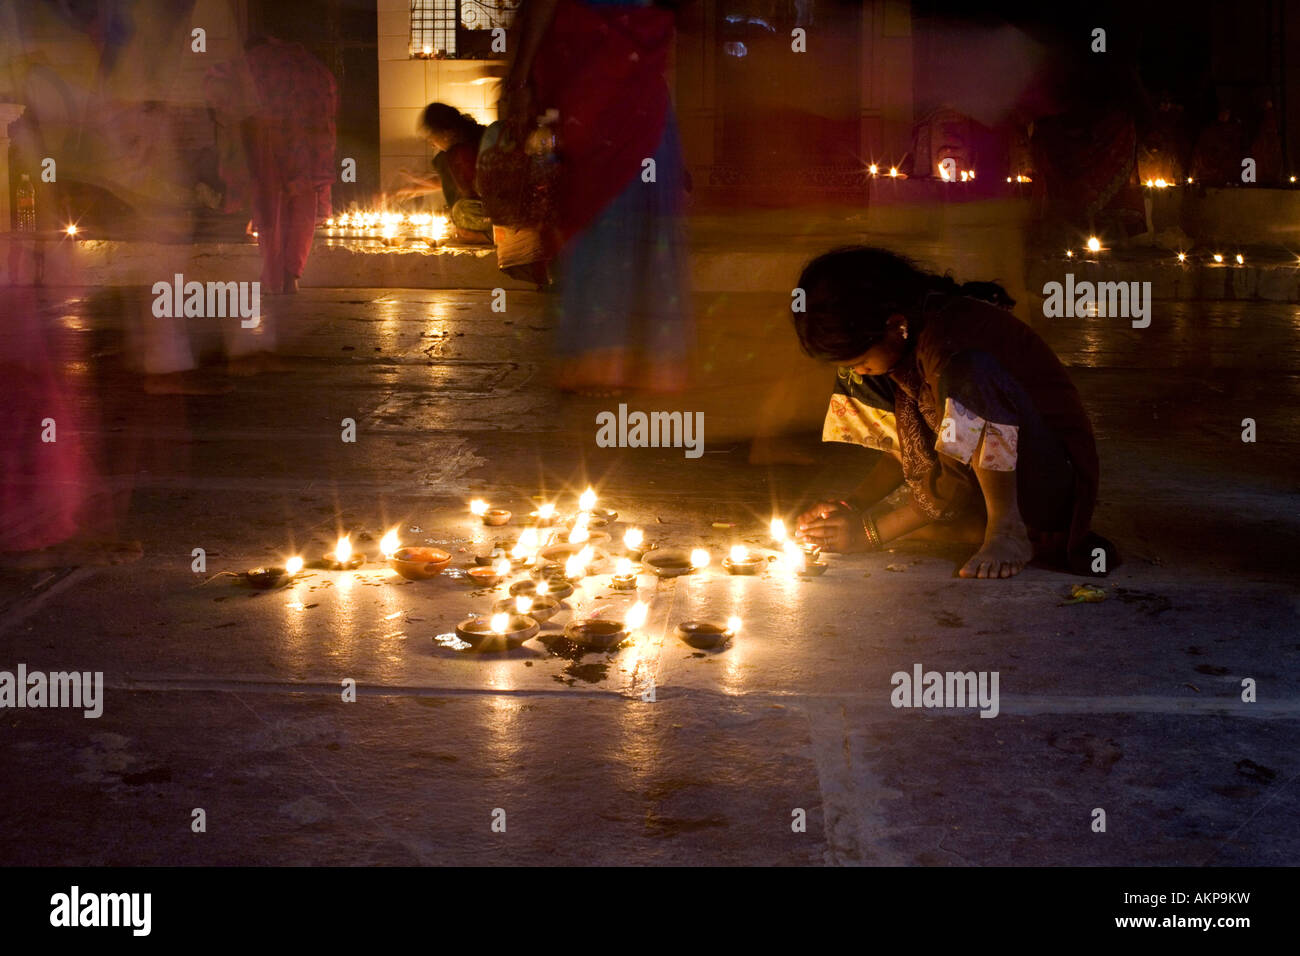 Indian girl dans un temple hindou à un Diwali festival à Puttaparthi, Andhra Pradesh, Inde.fête hindoue des lumières. Prises avec une longue exposition Banque D'Images